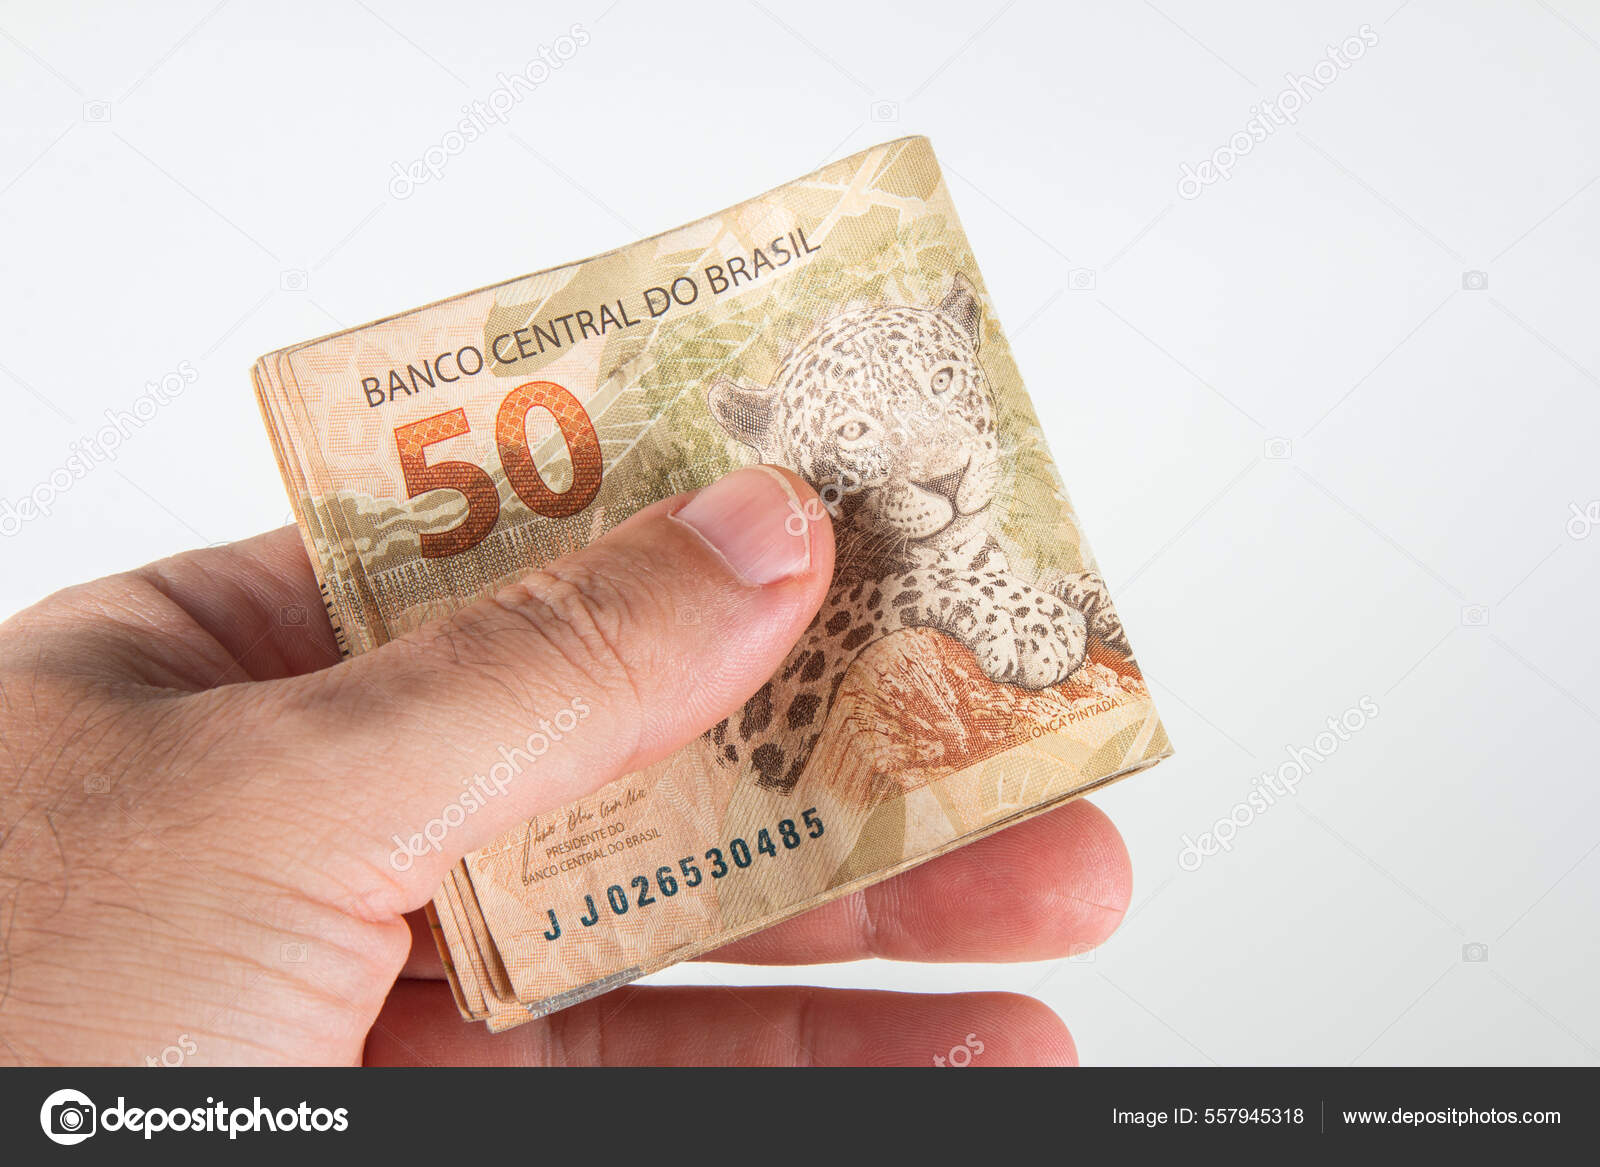 Dinheiro Brasileiro Mão Segurando Notas Reais Conceito Finanças Brasileiras  fotos, imagens de © gustavomello162.hotmail.com #557945318